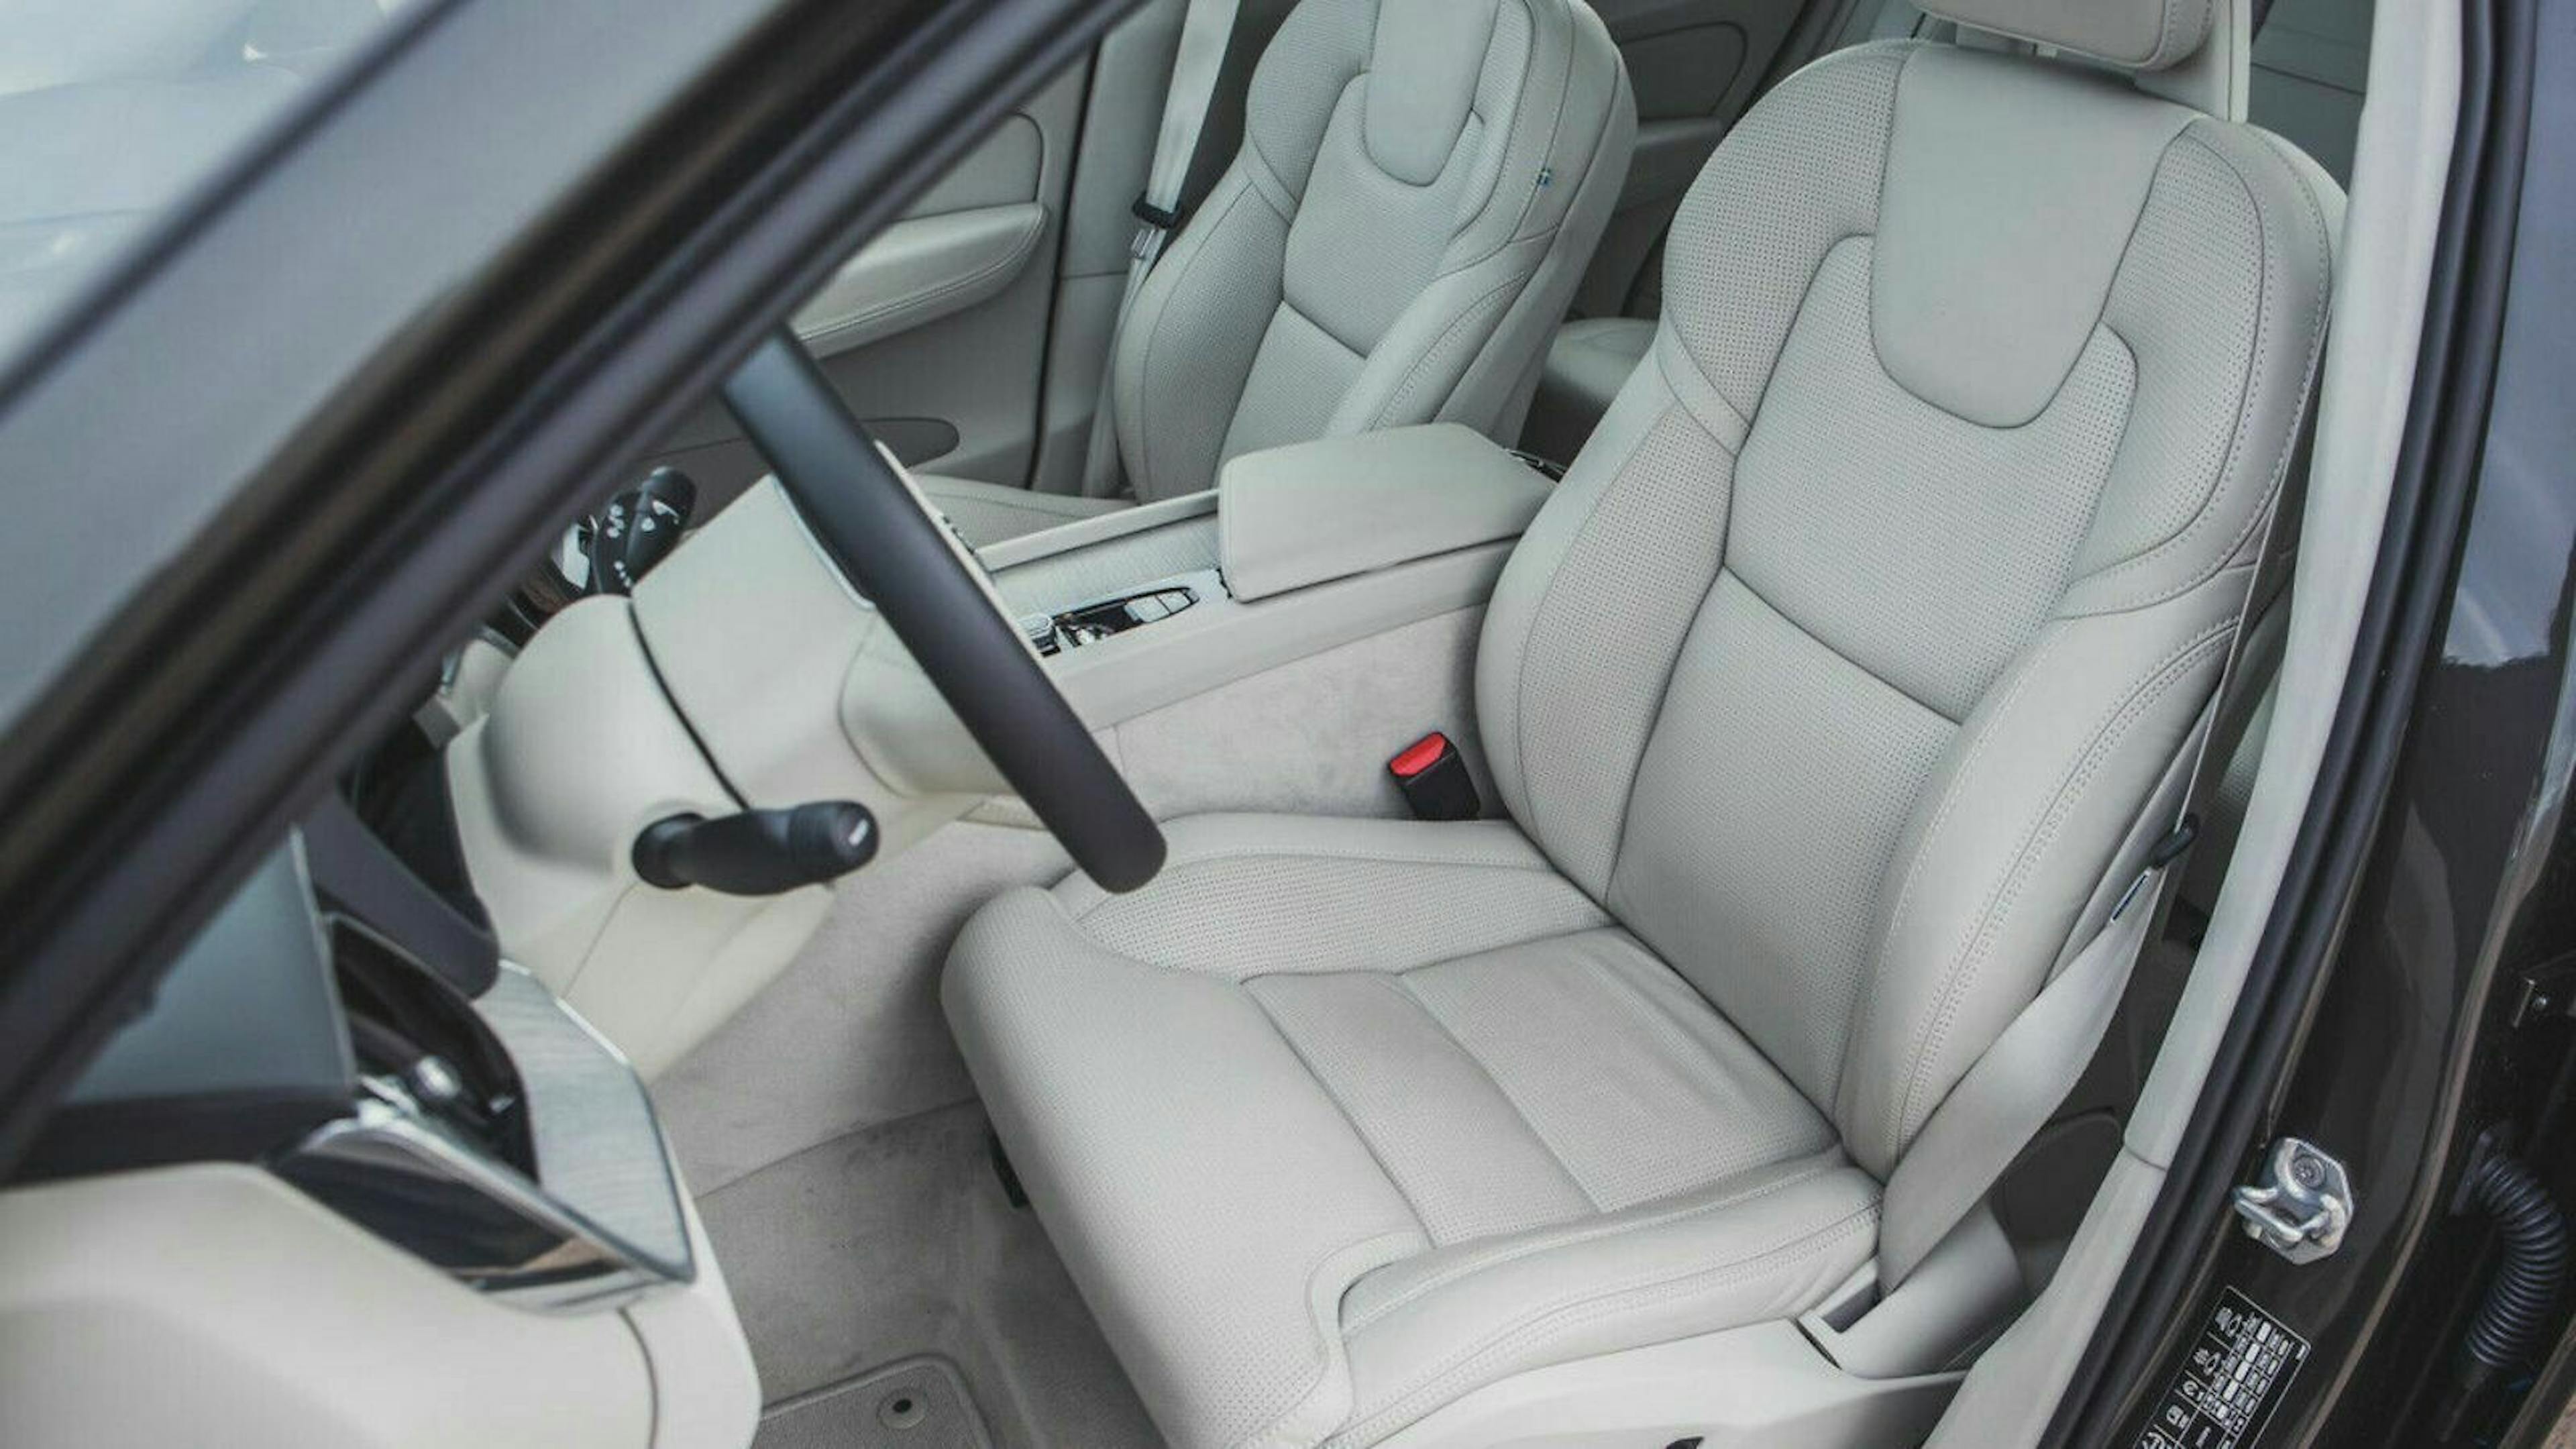 Einsicht bei geöffneter Fahrertür des Volvo XC60. Der Innenraum ist in hellen Farben gehalten